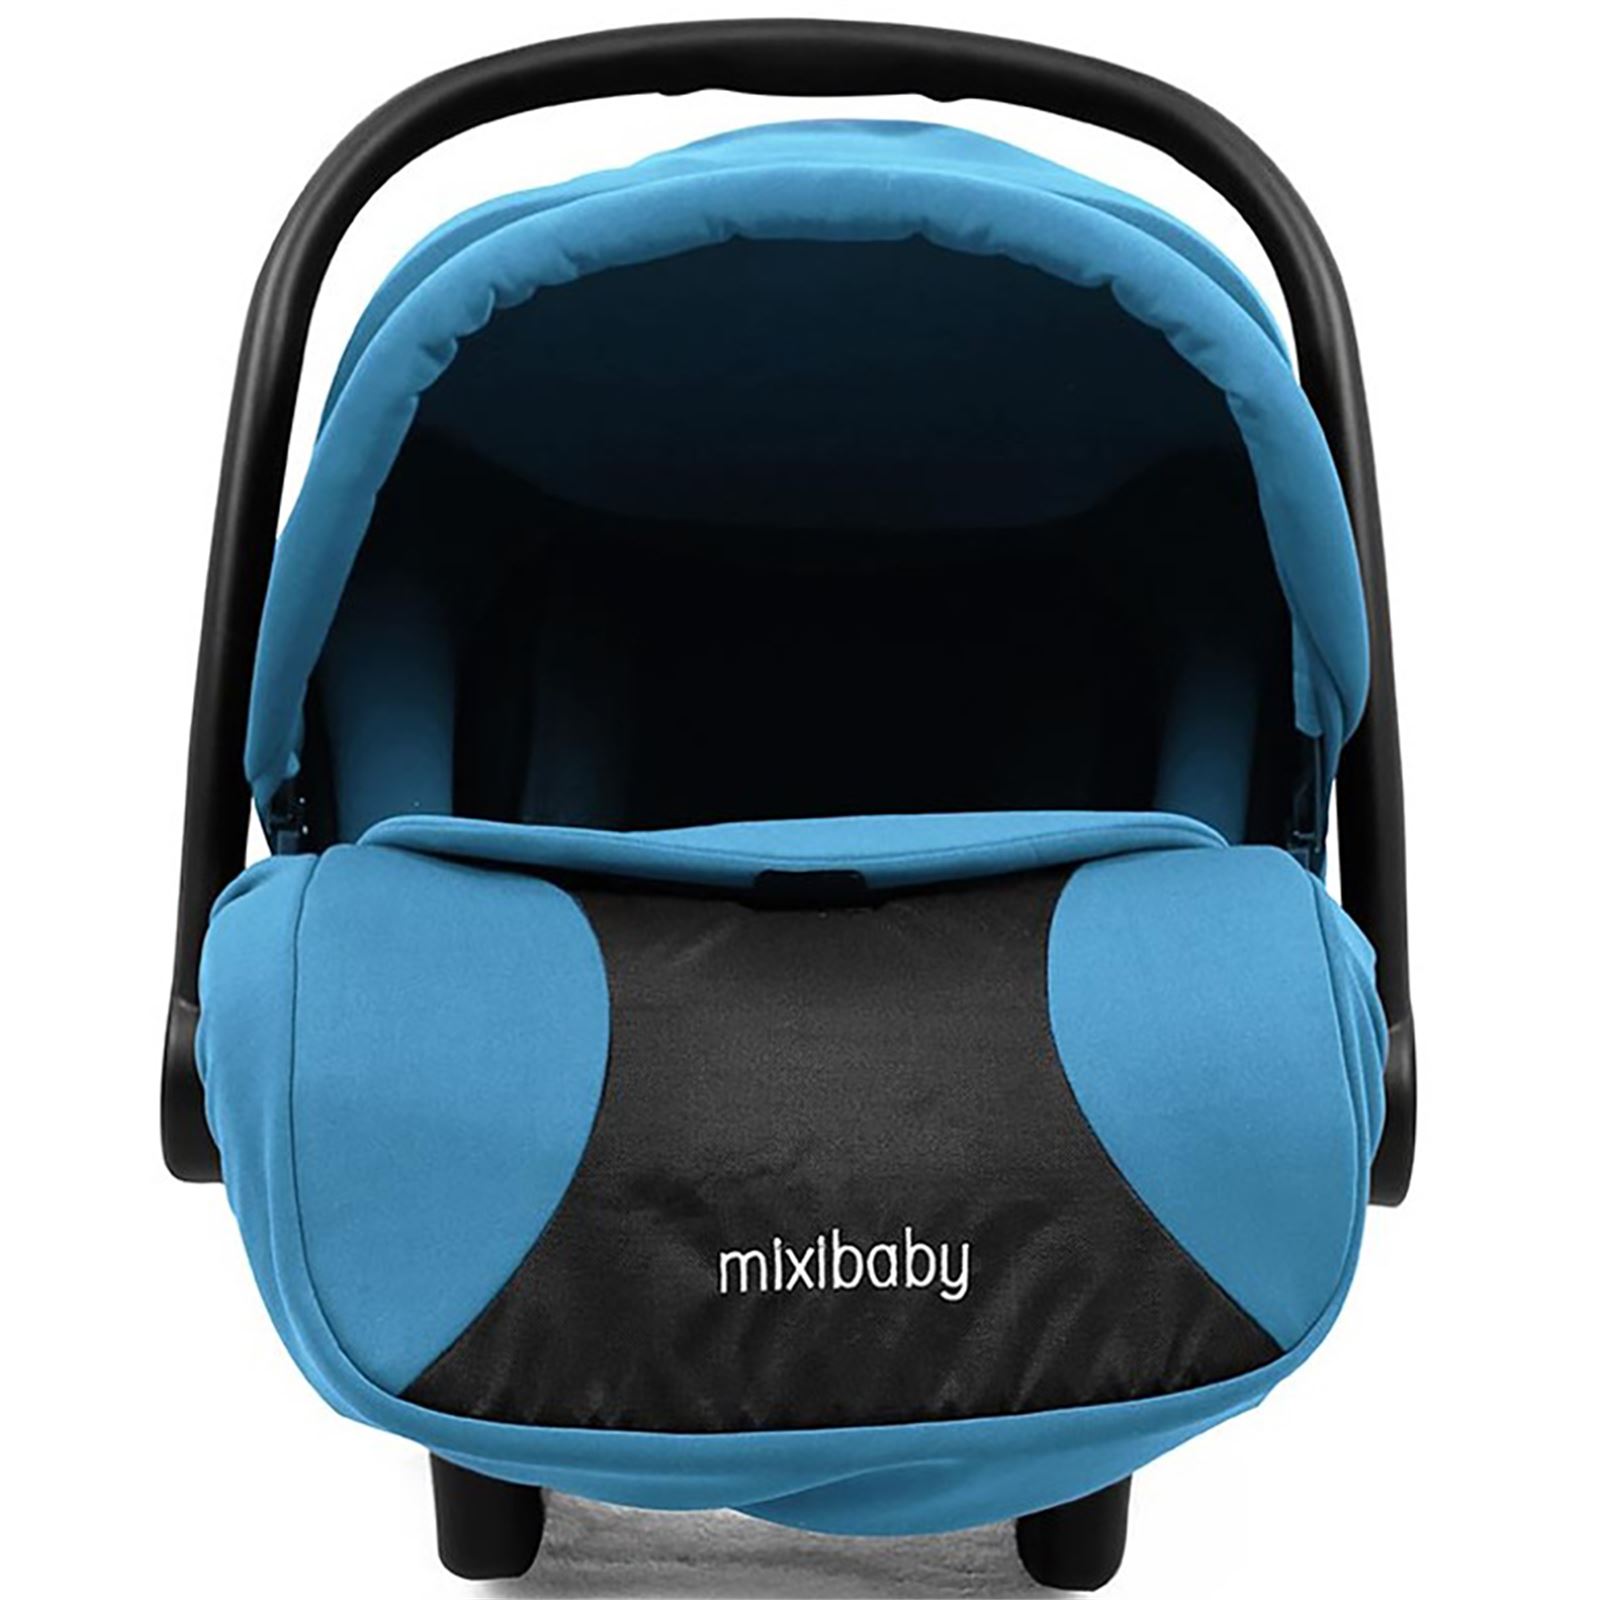 Mixi Baby Travel Sistem Bebek Arabası Mavi